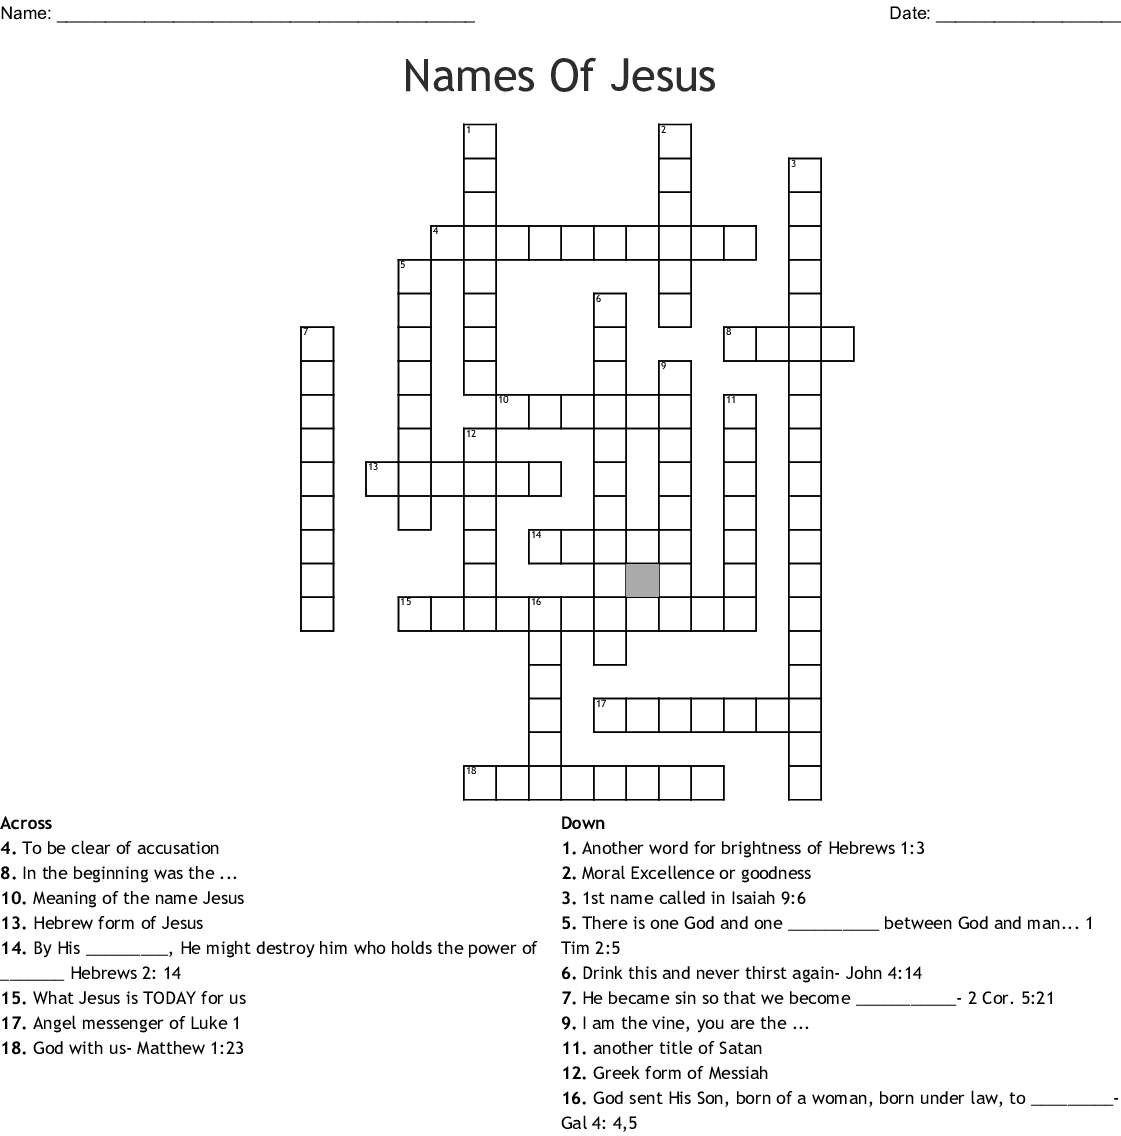 Names Of Jesus Crossword WordMint - Easy Crossword Puzzles Jesus